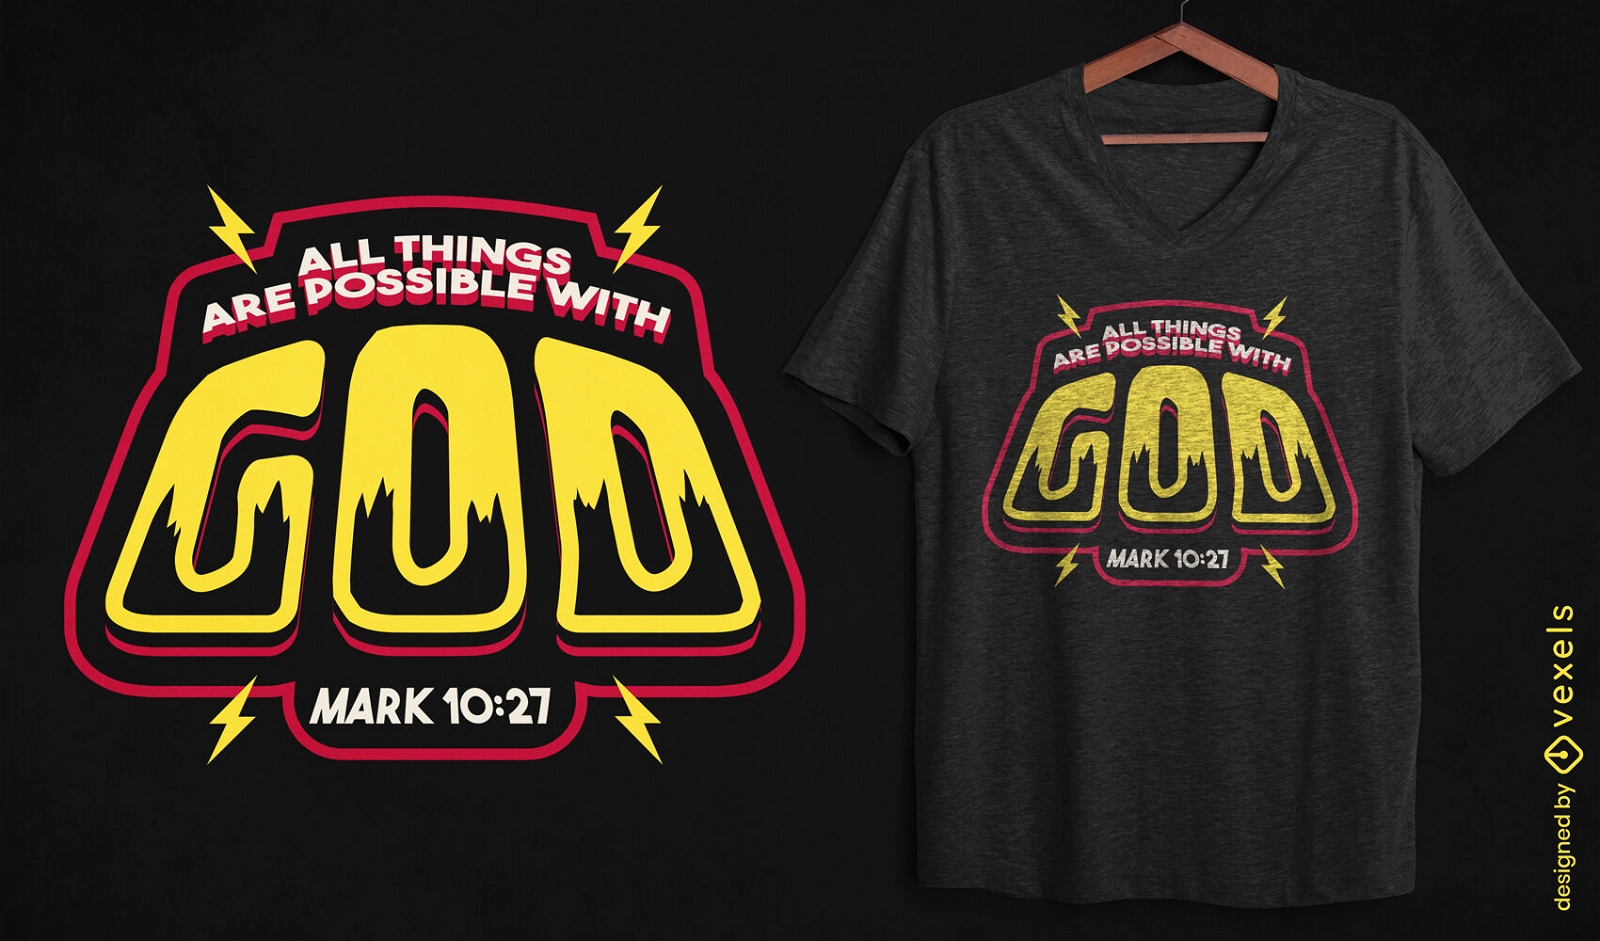 Dise?o de camiseta con cita inspiradora de Dios